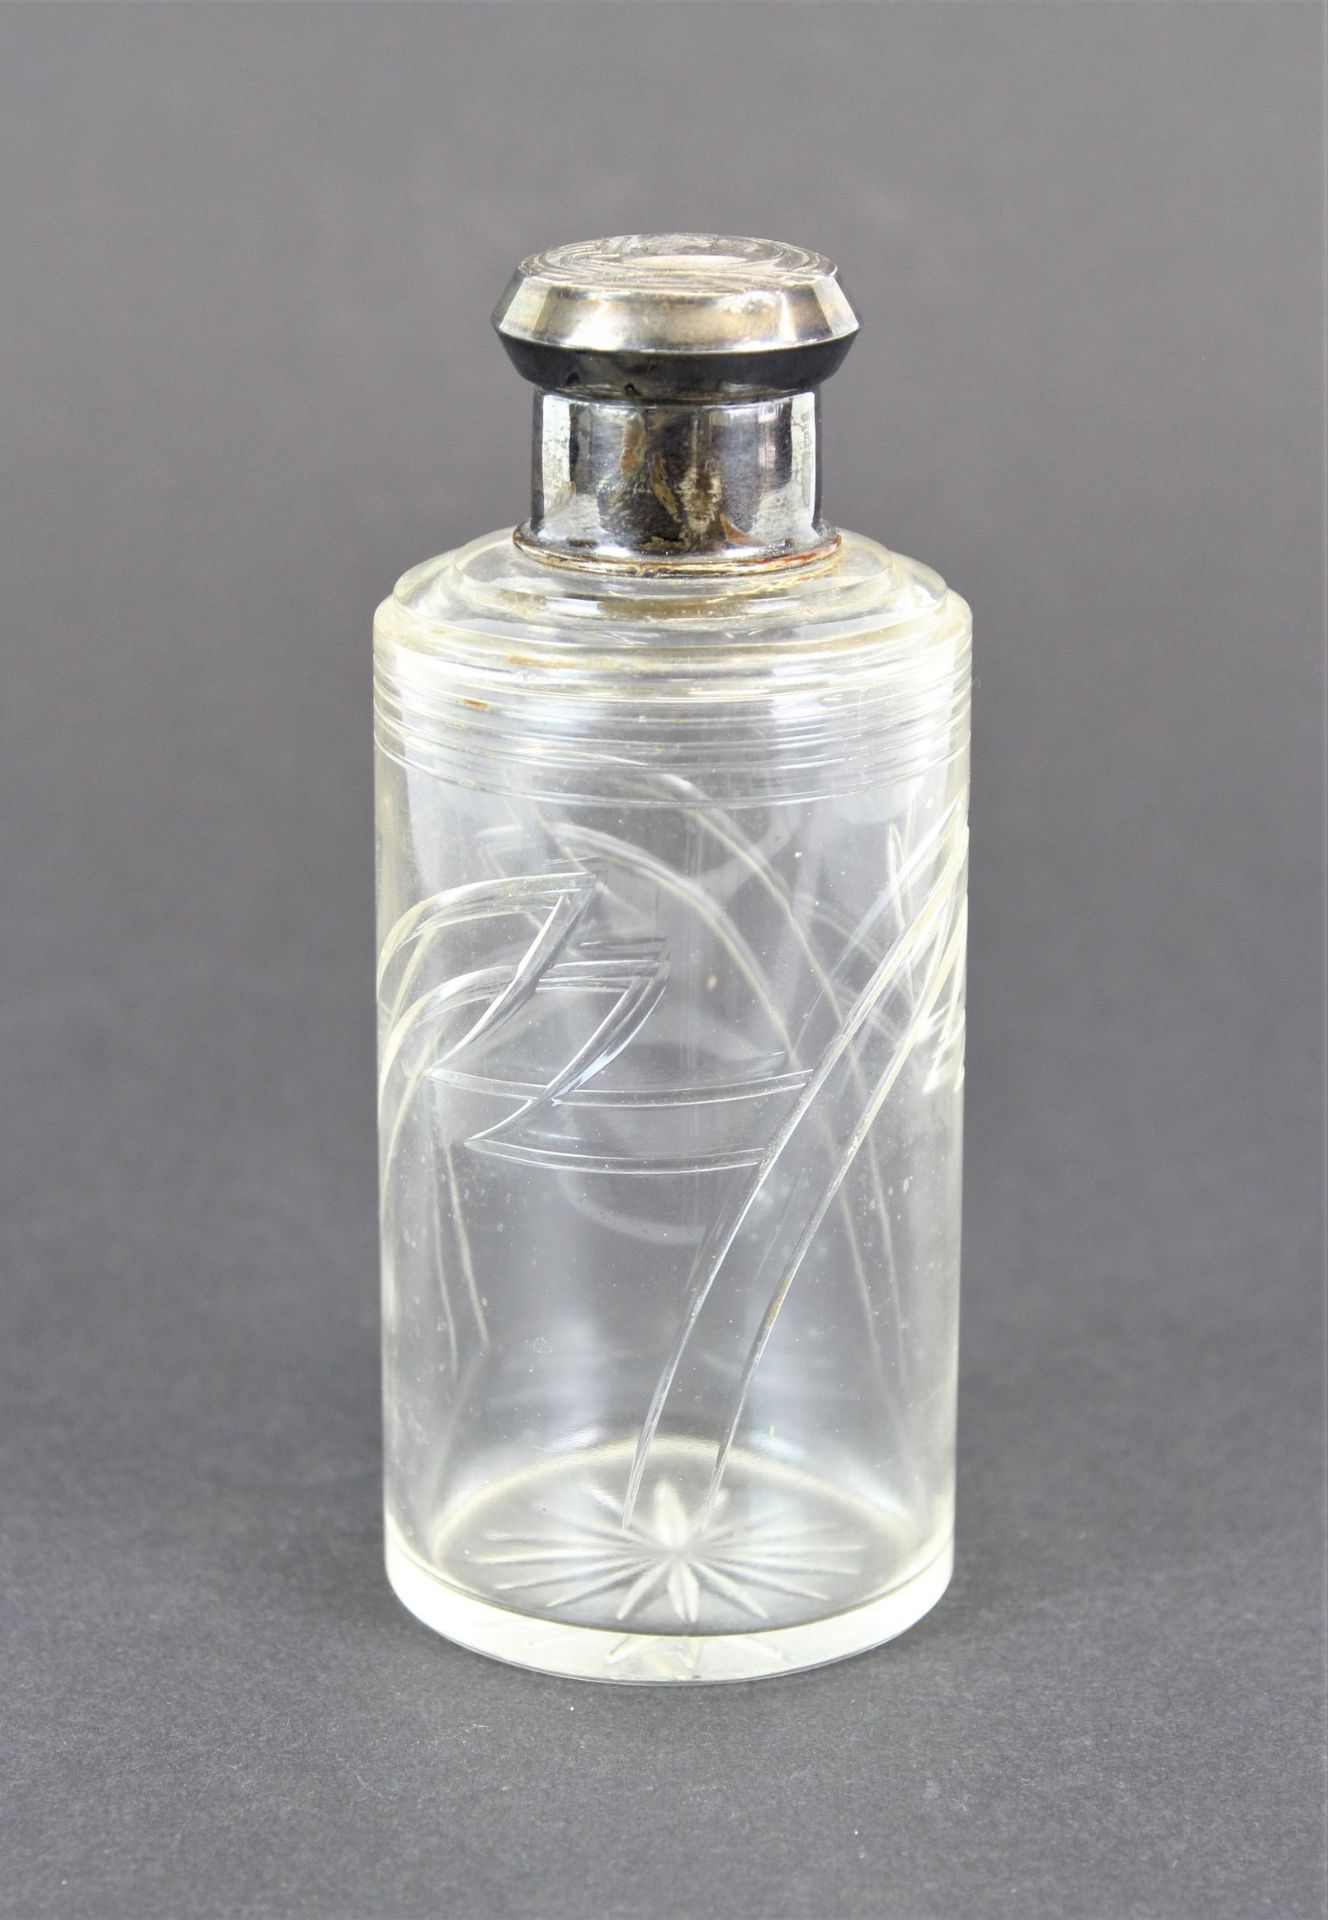 Jugendstil Glas Flacon mit Silberdeckel und graviertem fürstlichen Wappen - Image 3 of 3